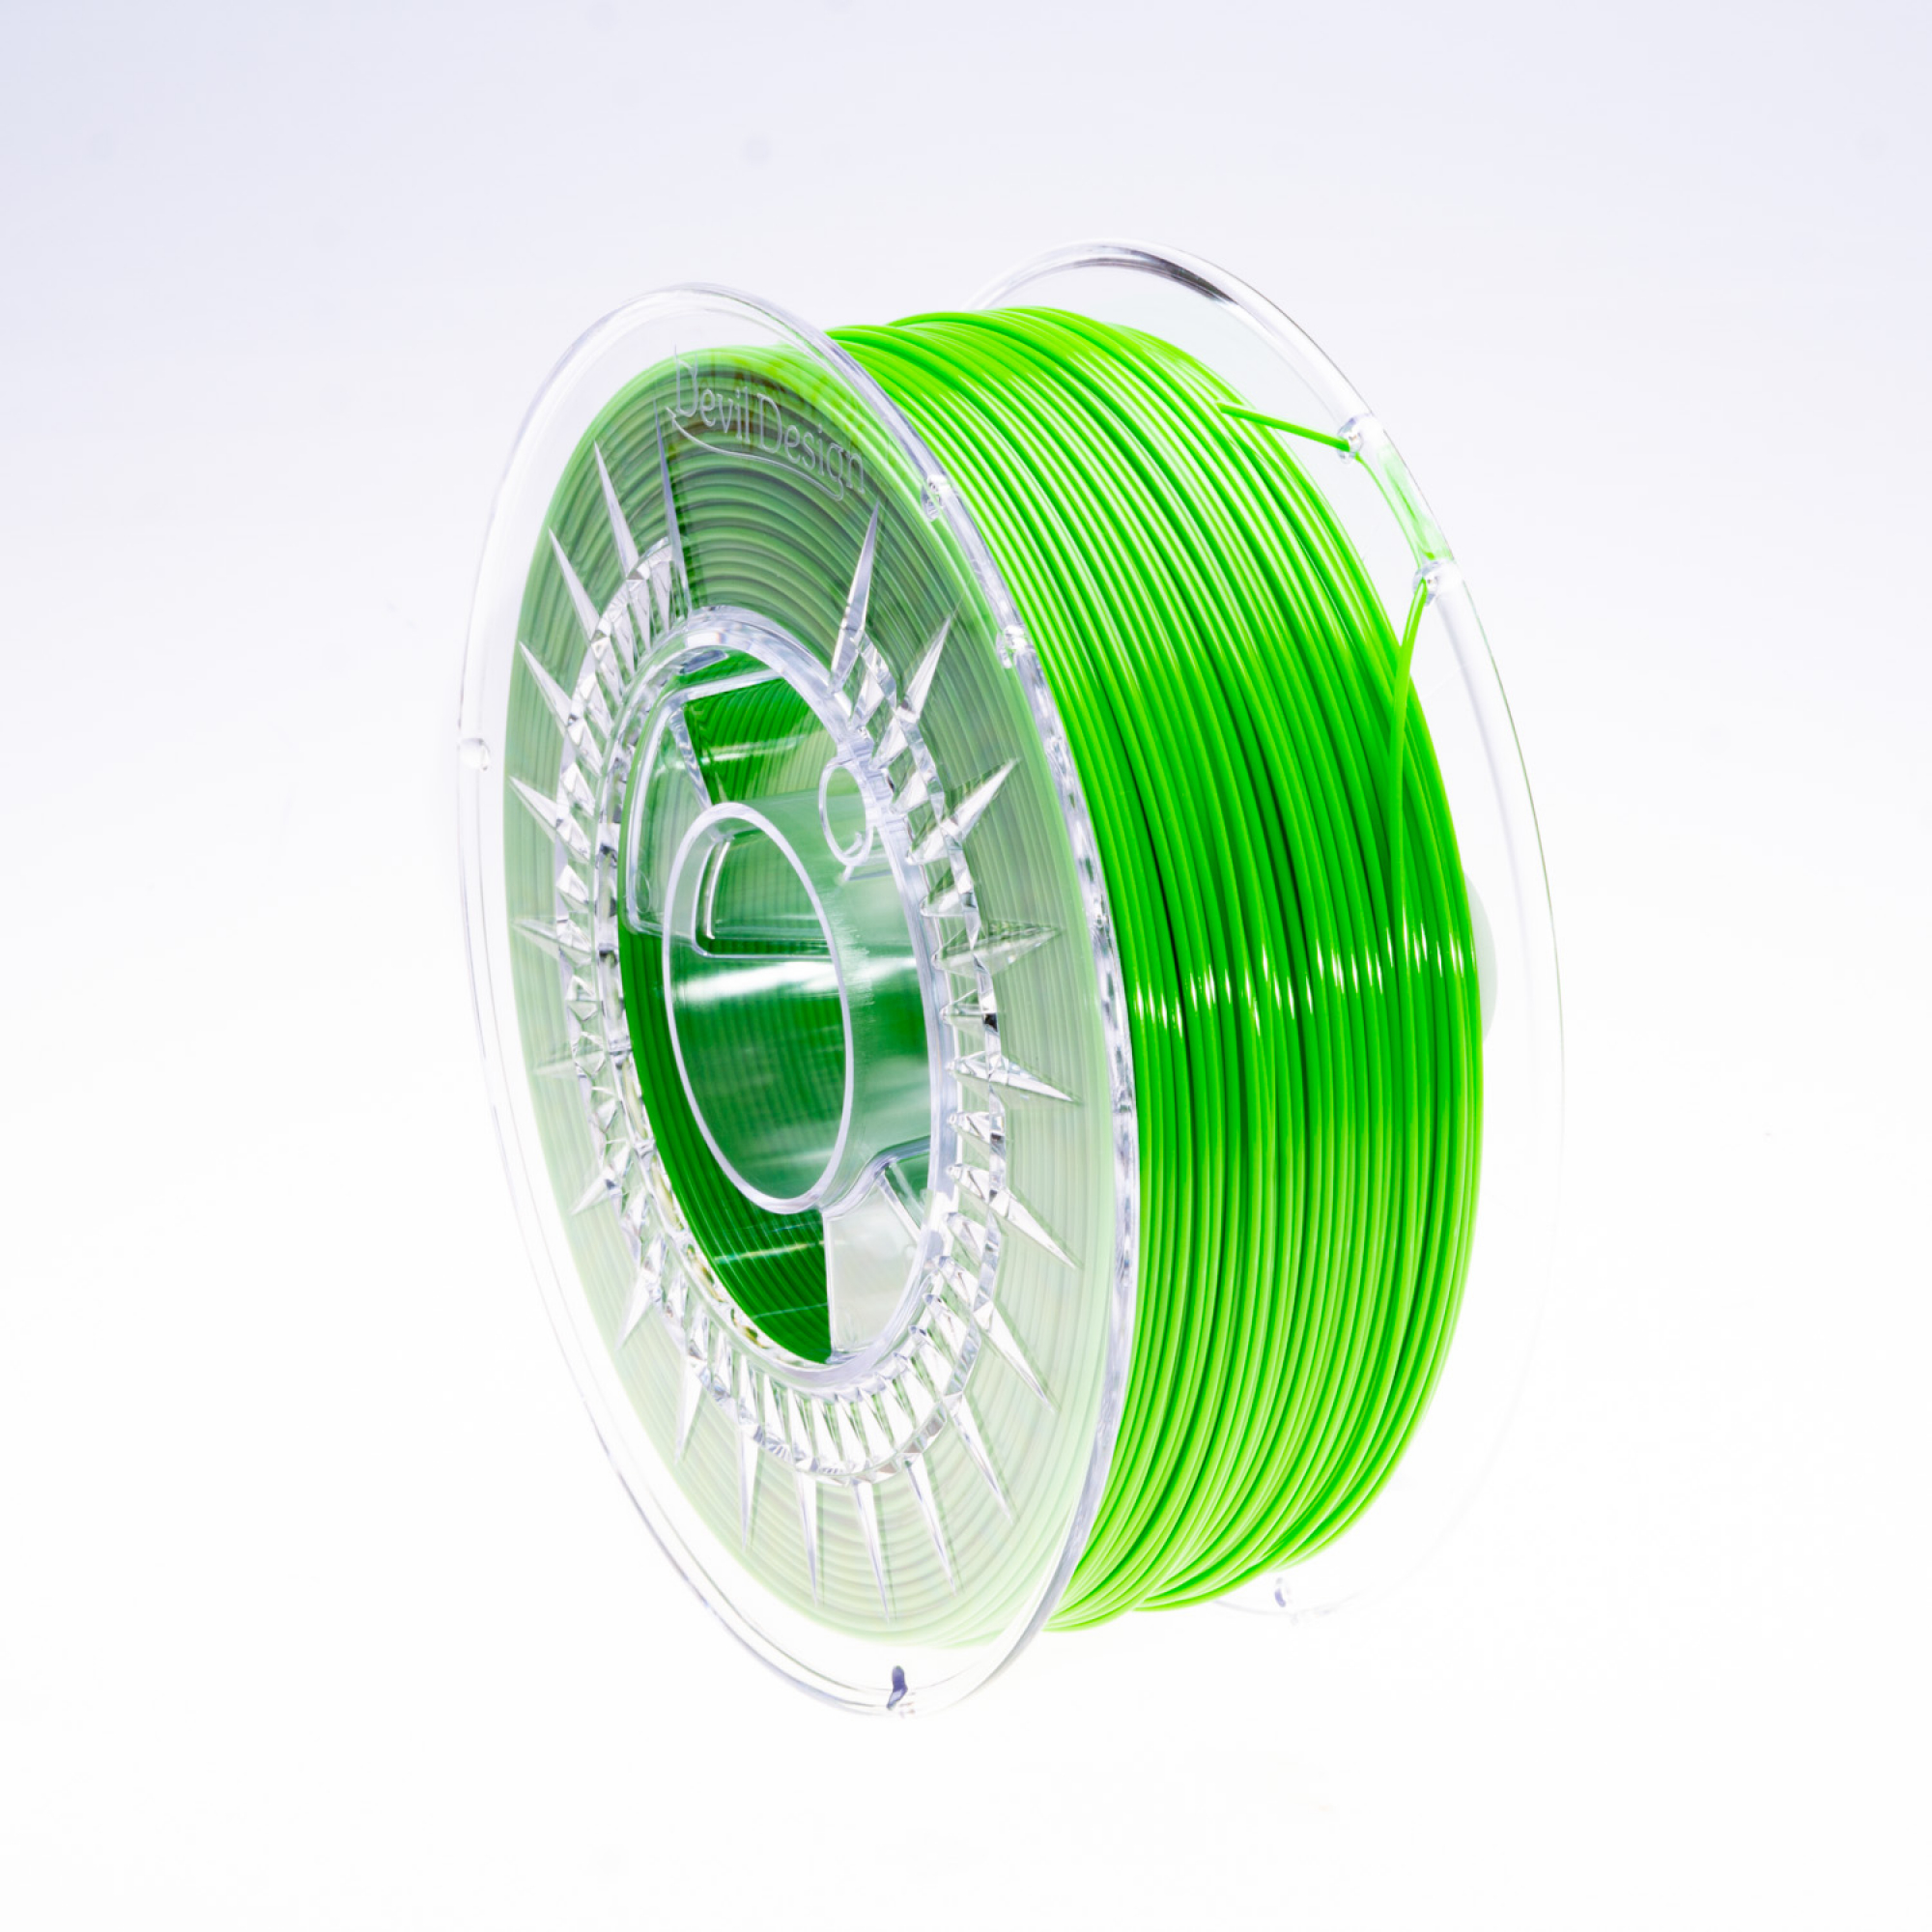 Filament PETG Grün 1,75 mm